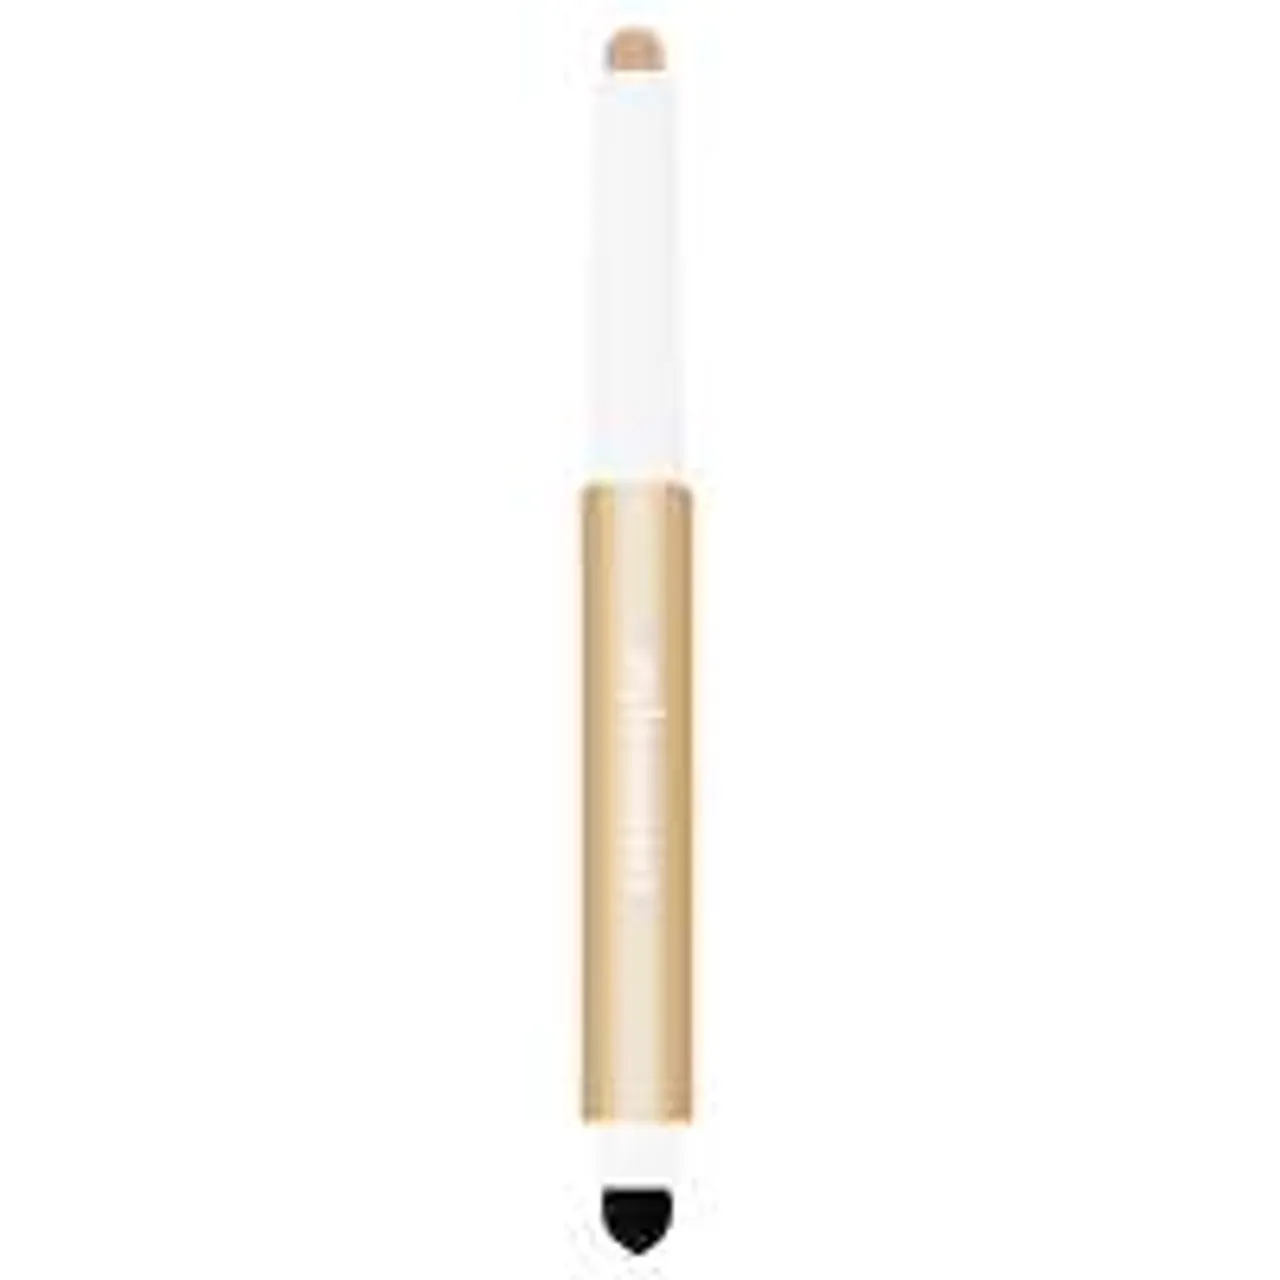 Sisley Stylo Correct Concealer Pen 3 - Light 1.7g